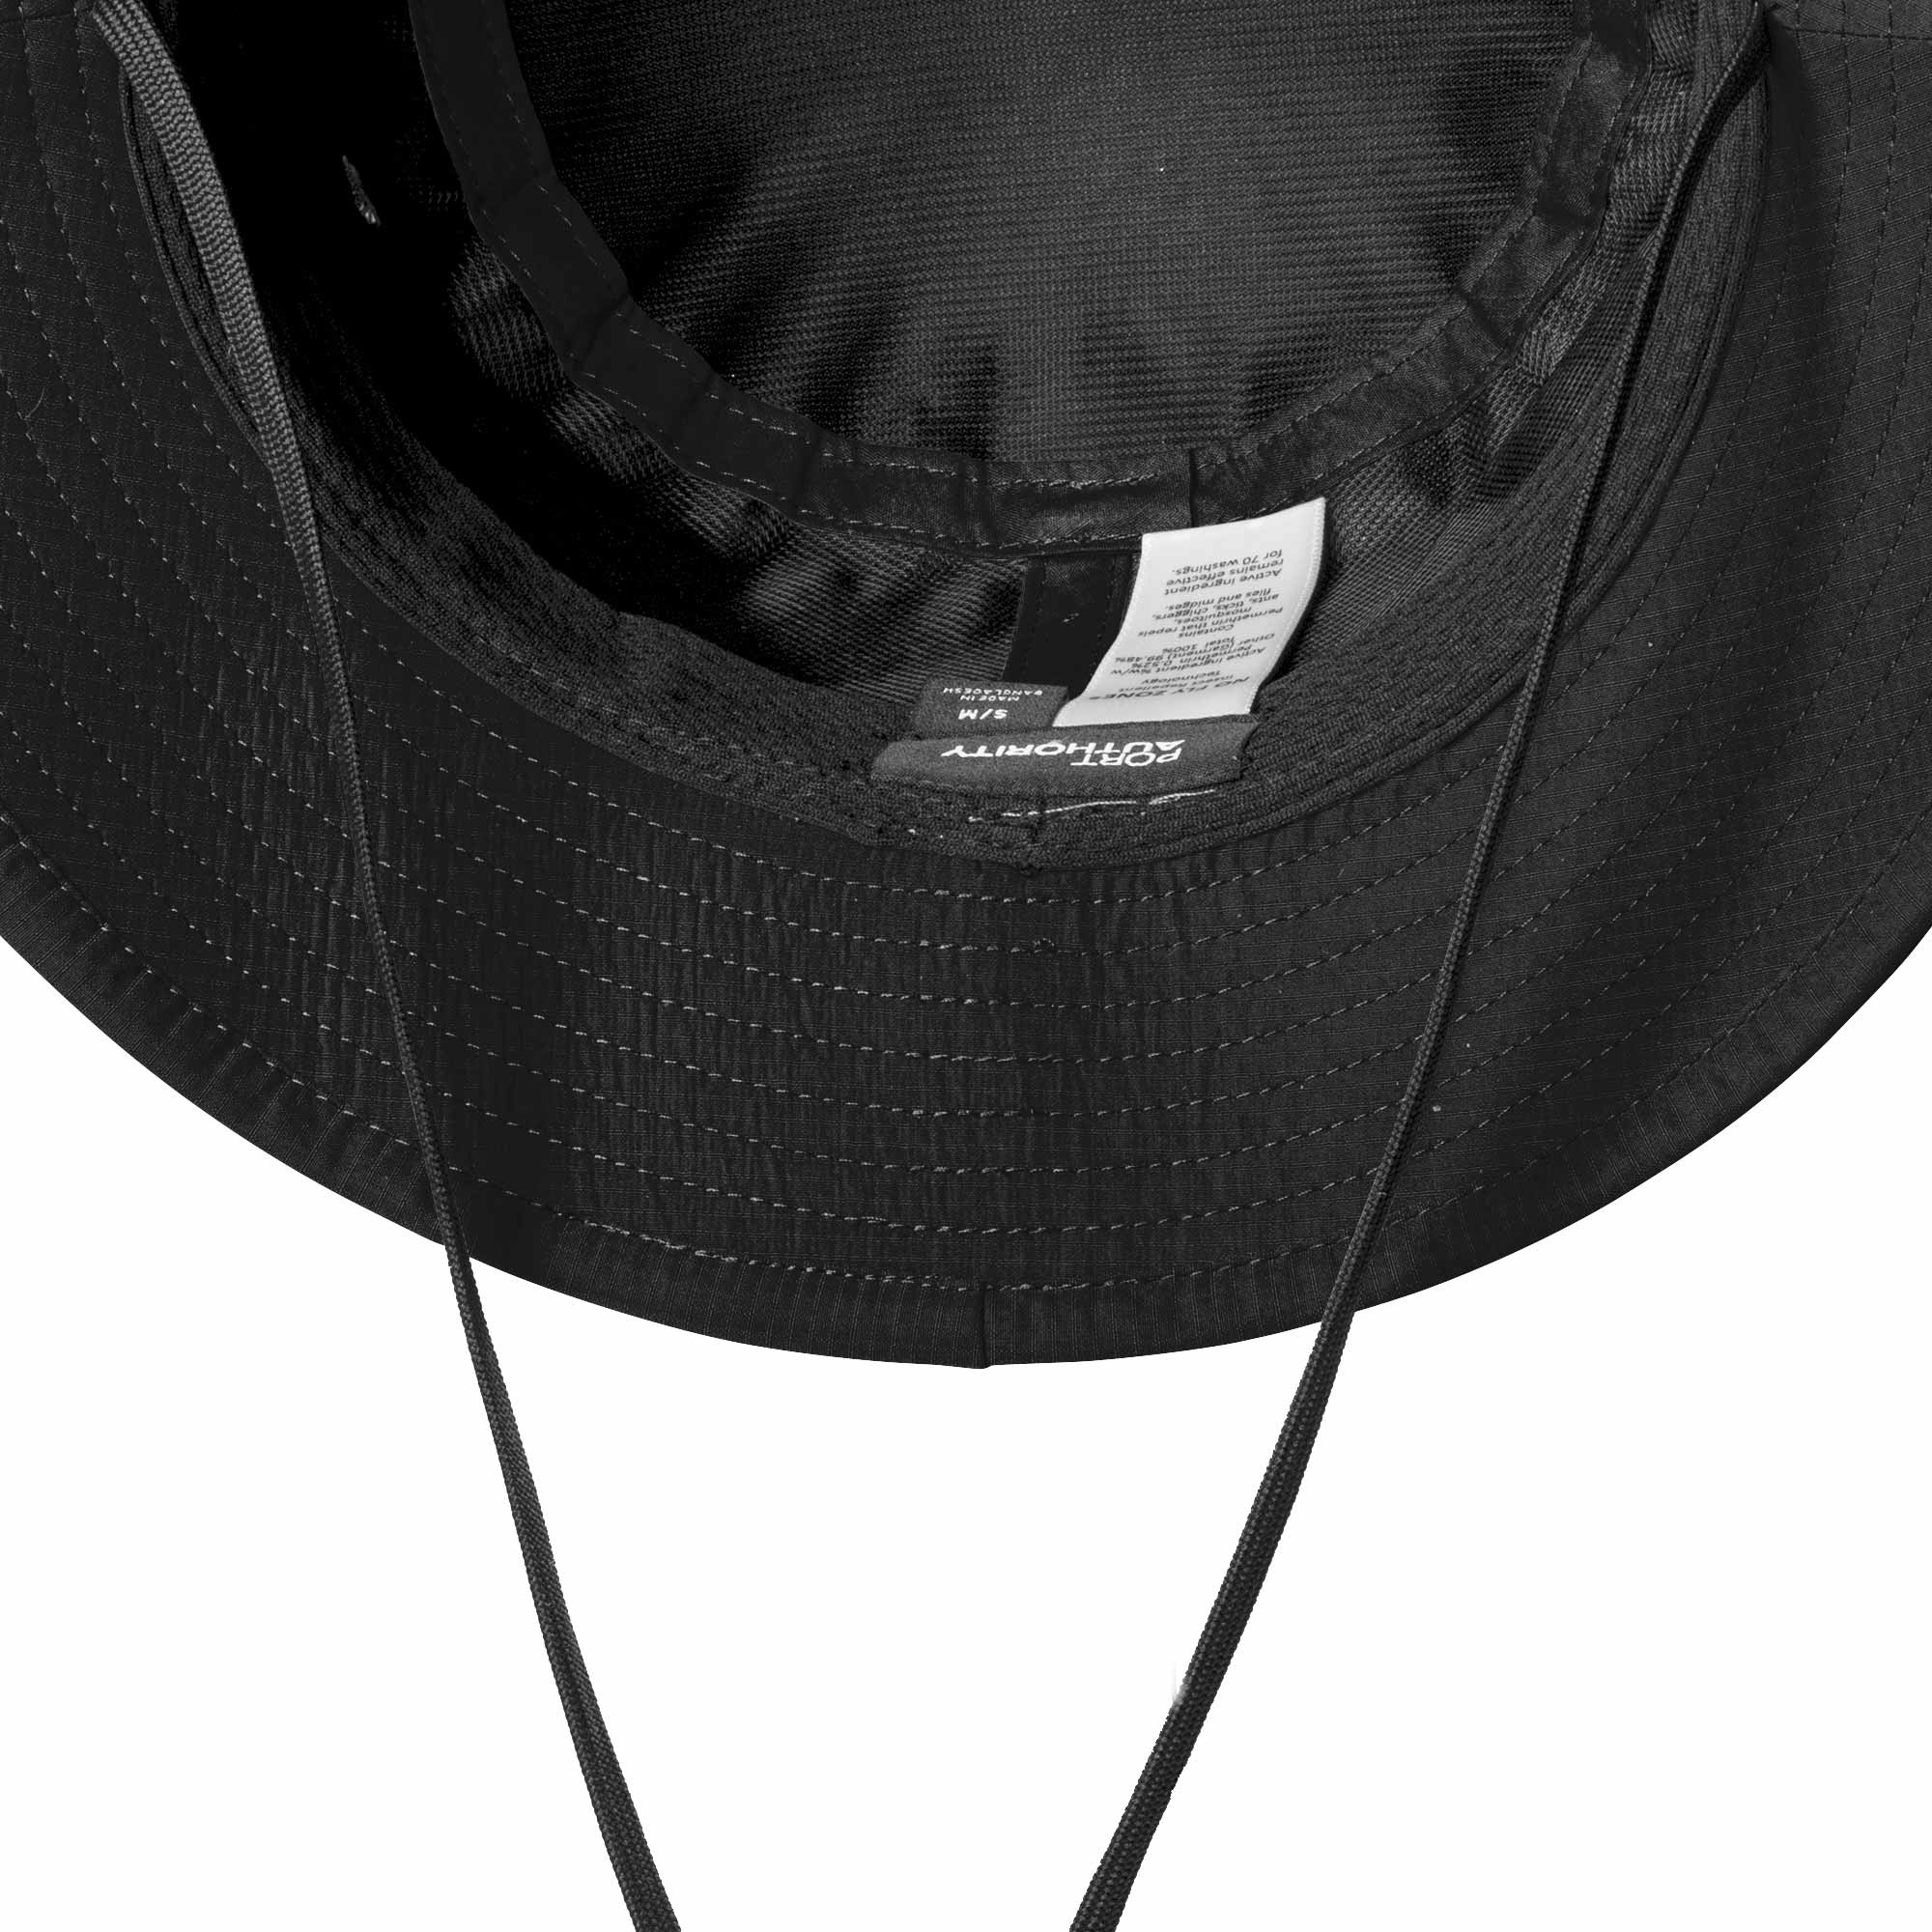 Port Authority C948 Outdoor UV Bucket Hat - Black | Full Source